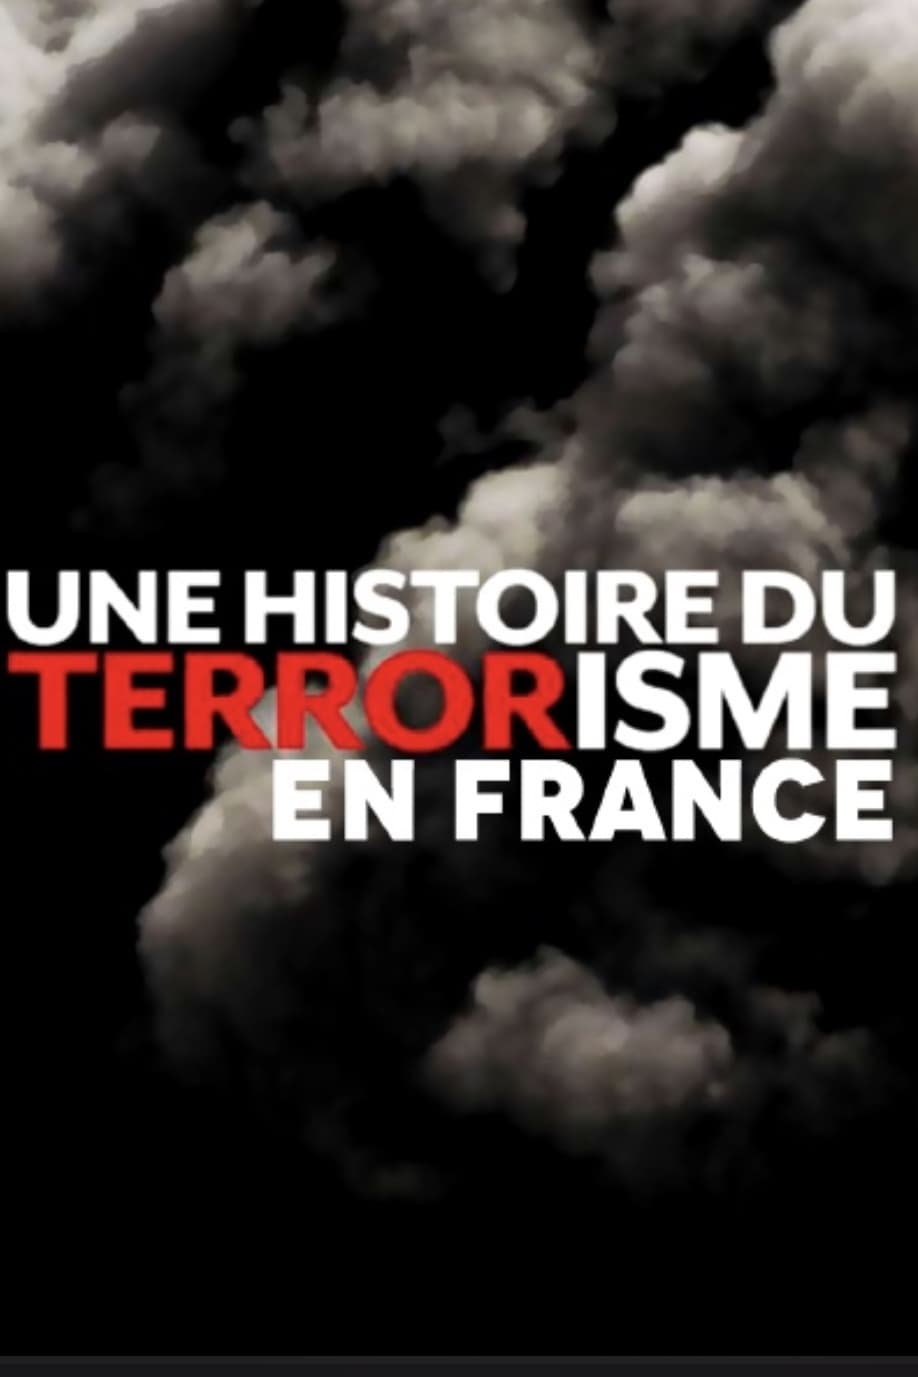 Une histoire du terrorisme